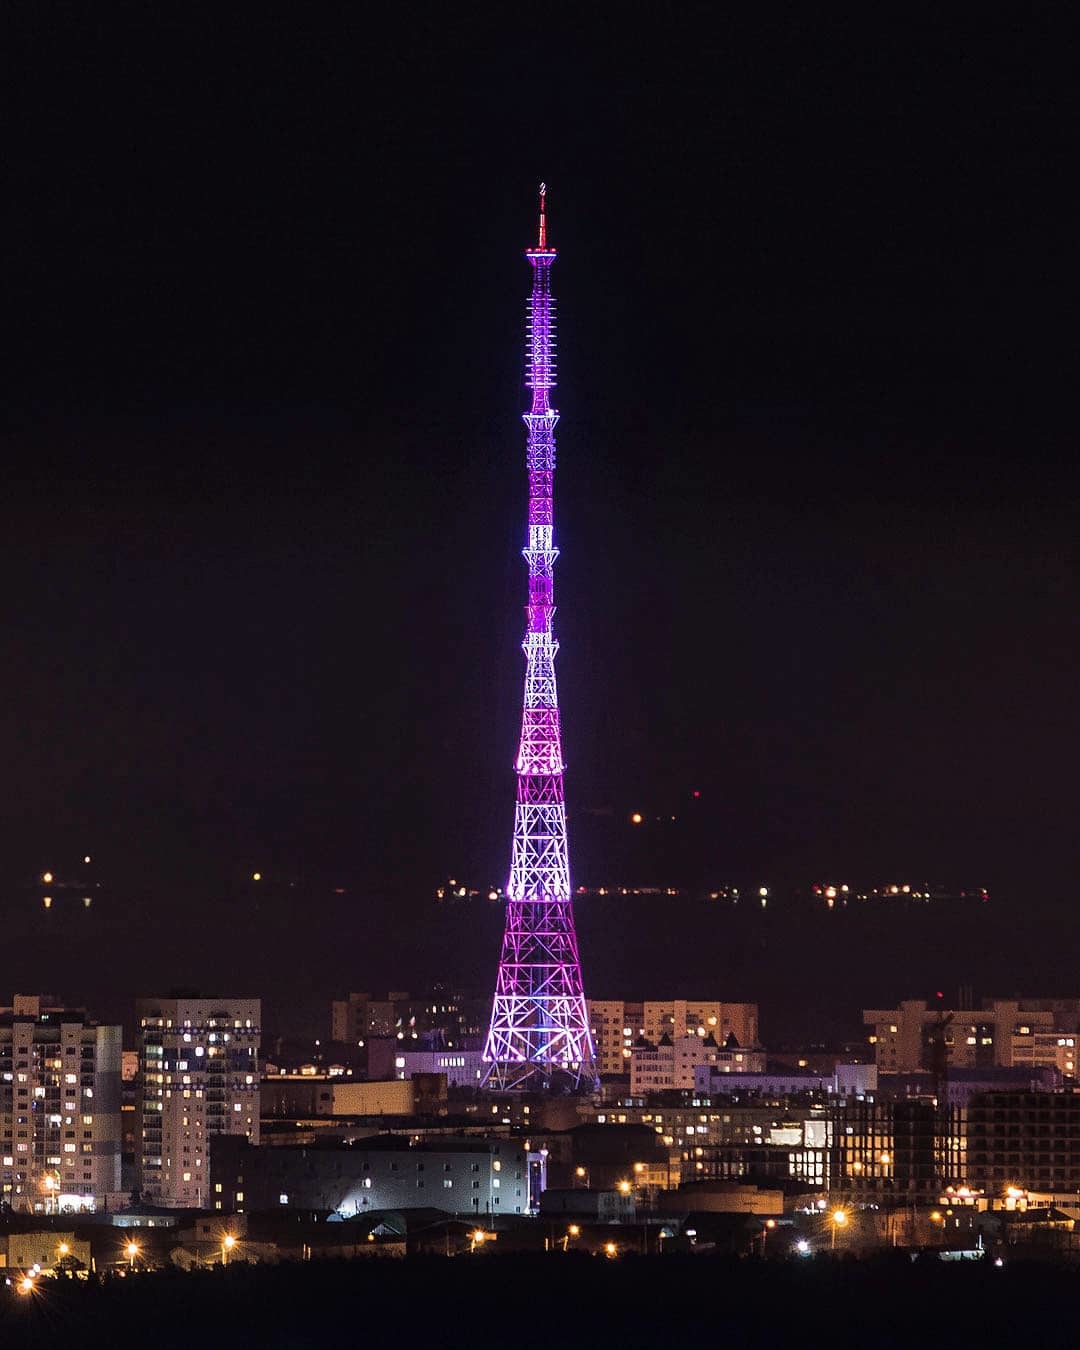 17 ноября телебашня Якутска  и световой фонтан на ул. Орджоникидзе засияют фиолетовым цветом